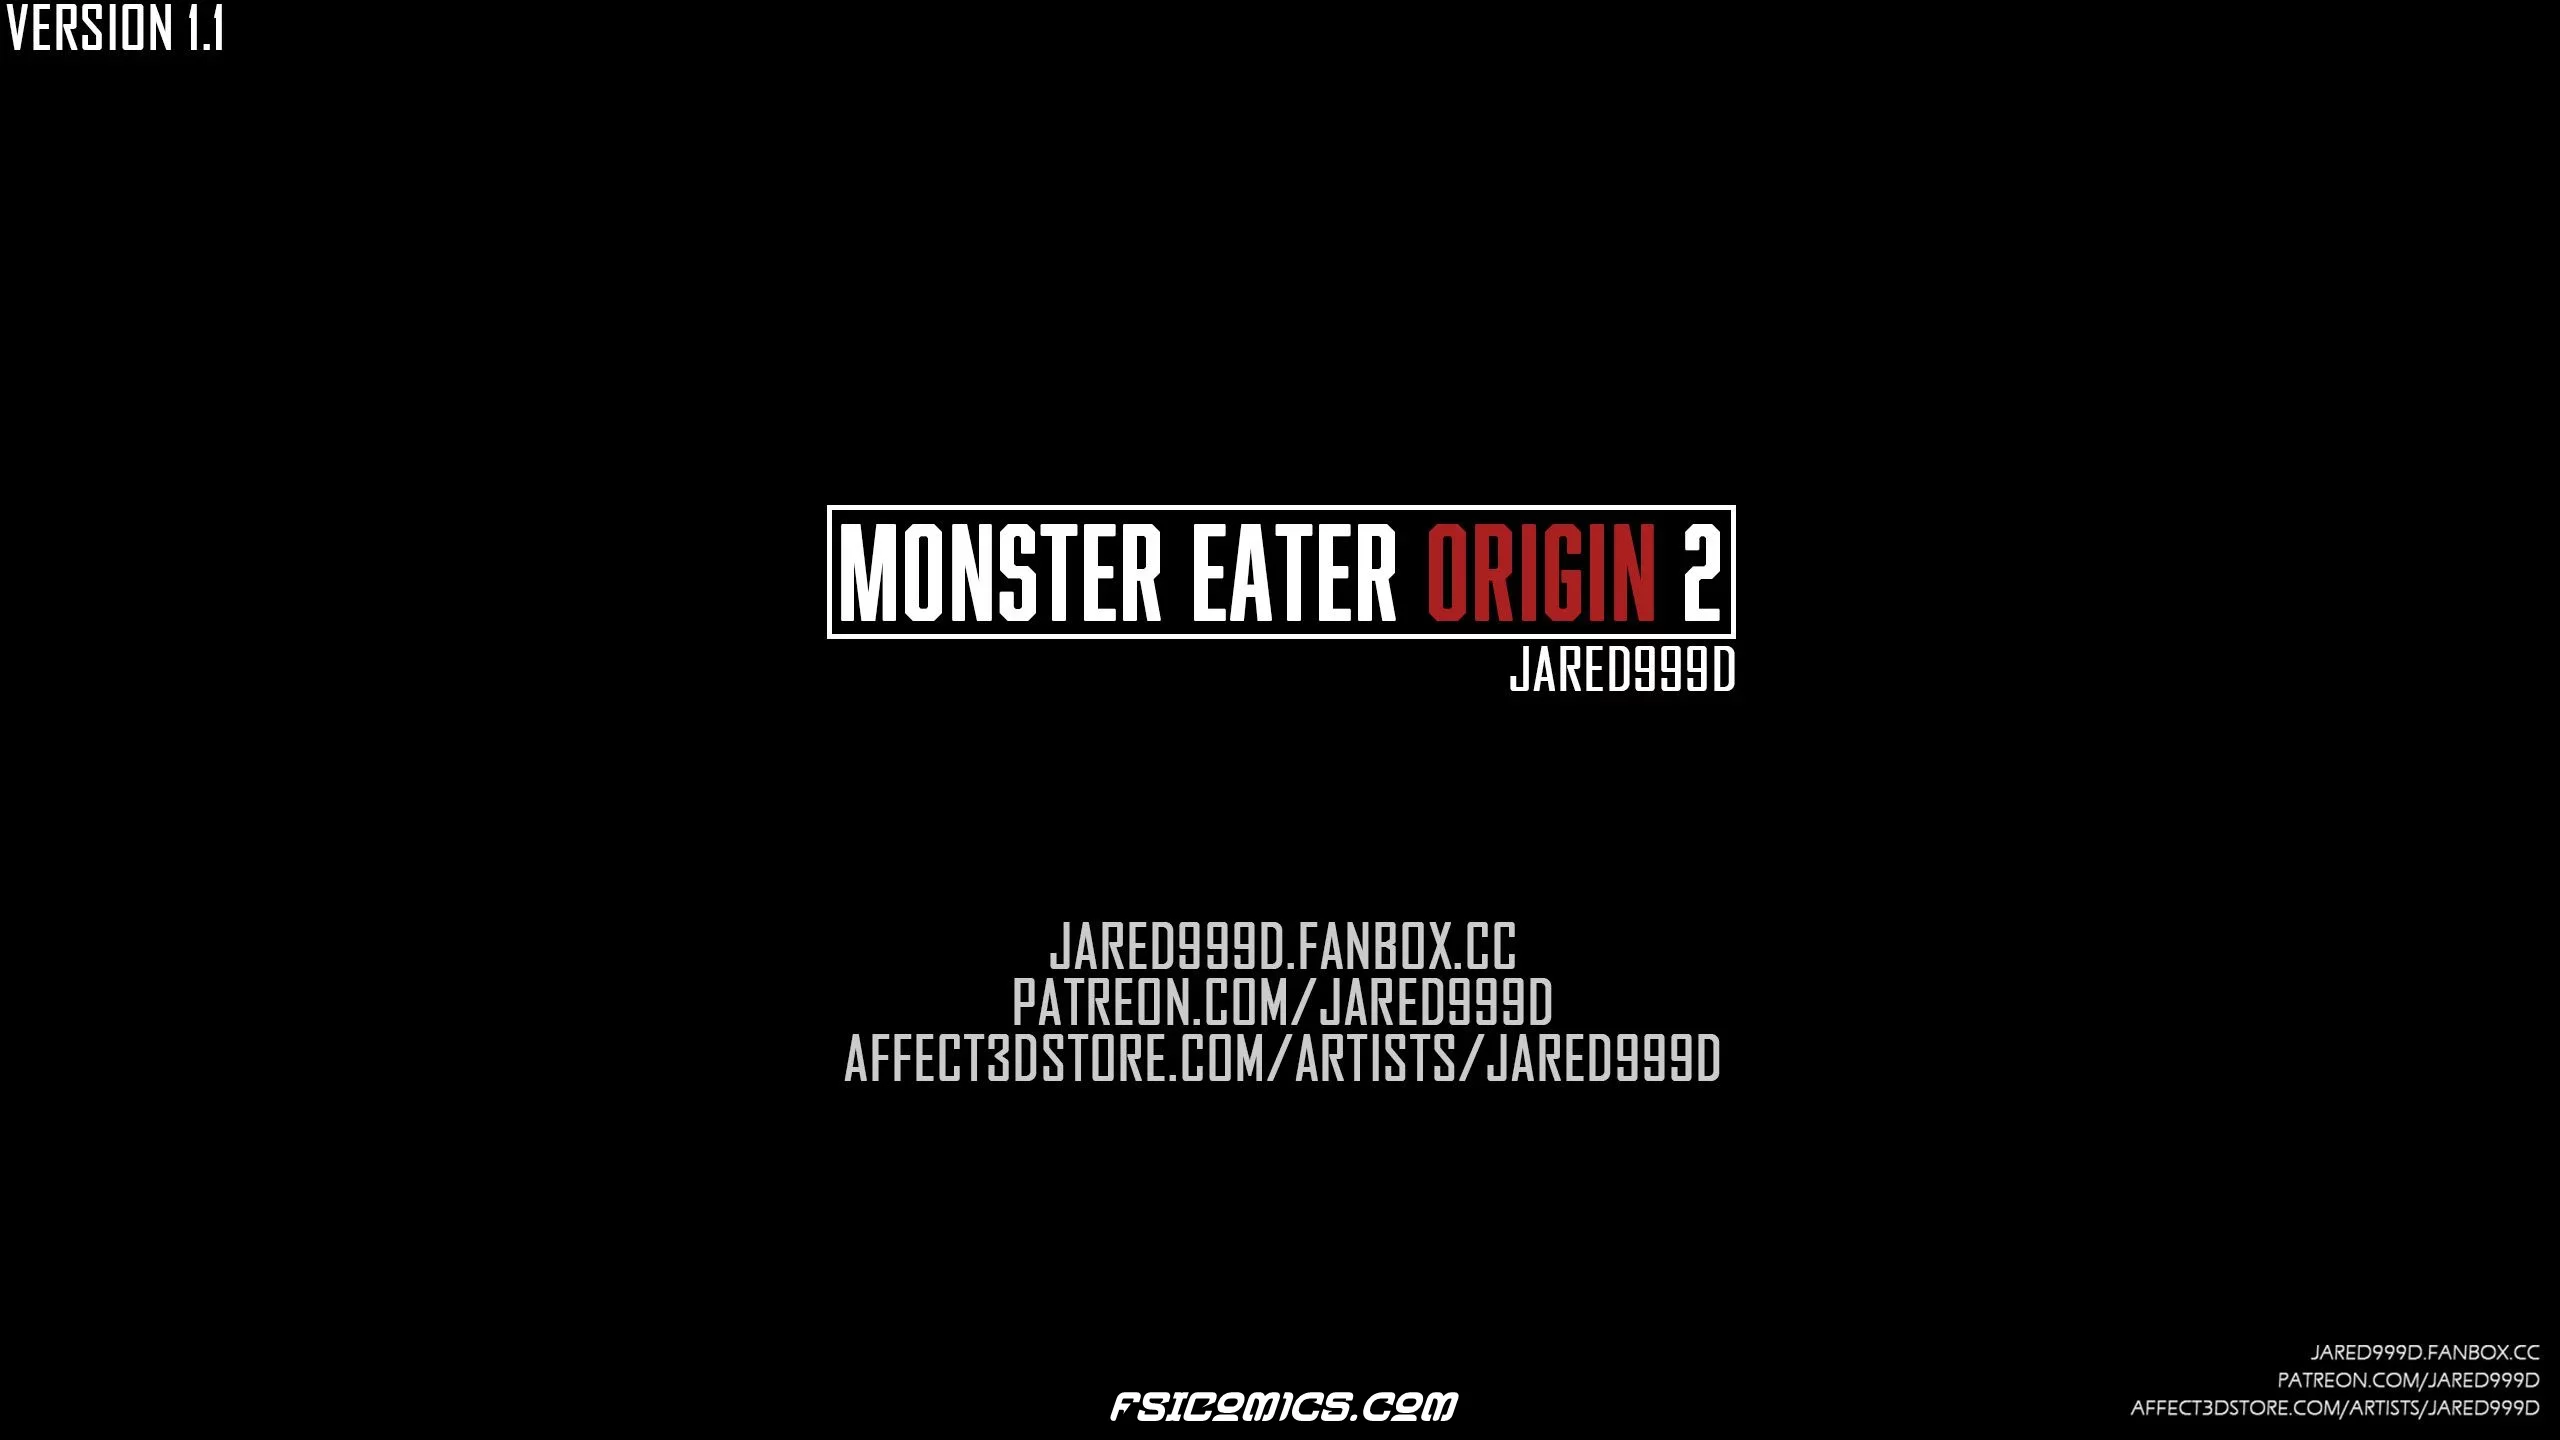 Monster Eater Origins Chapter 2 - Jared999D - 19 - FSIComics